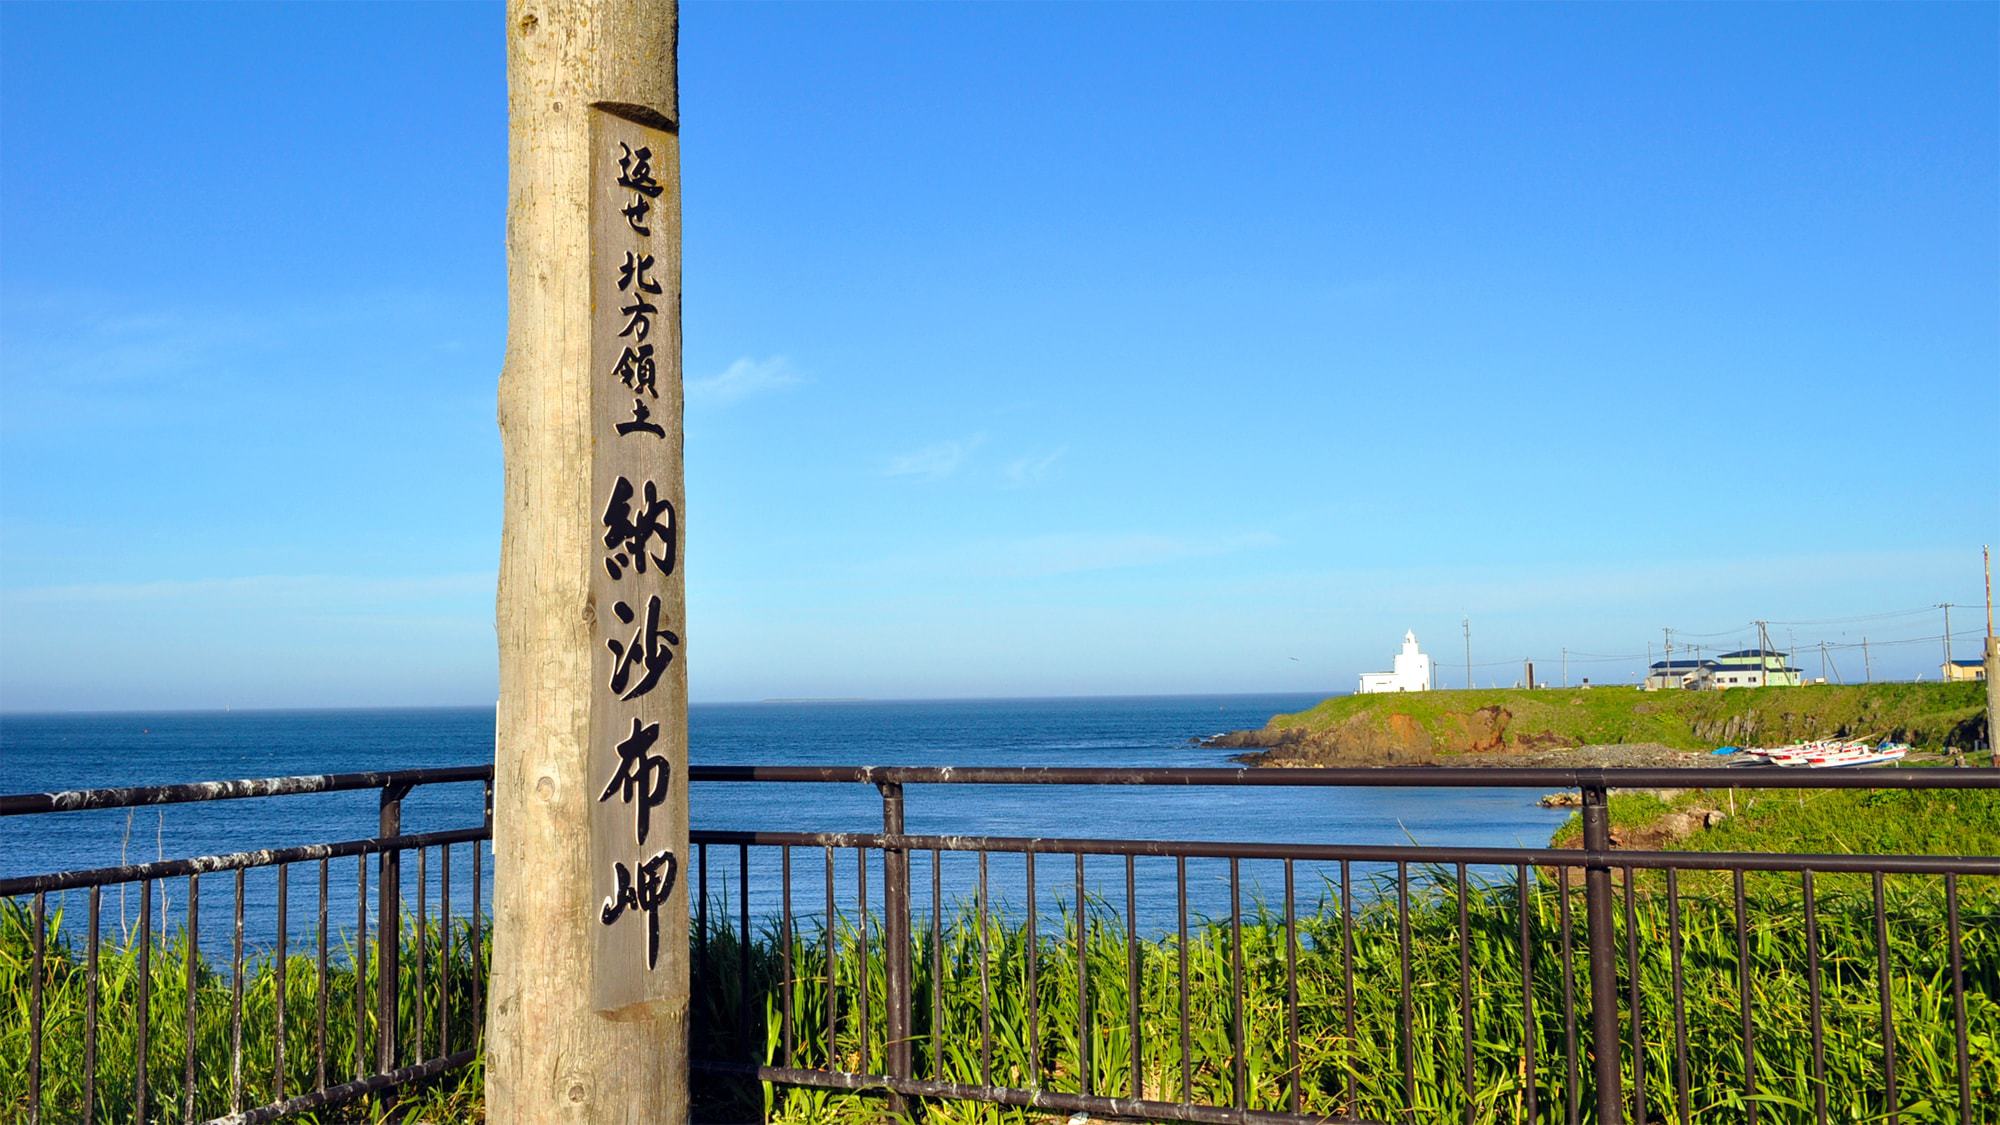 【納沙布岬】日本最東端の地